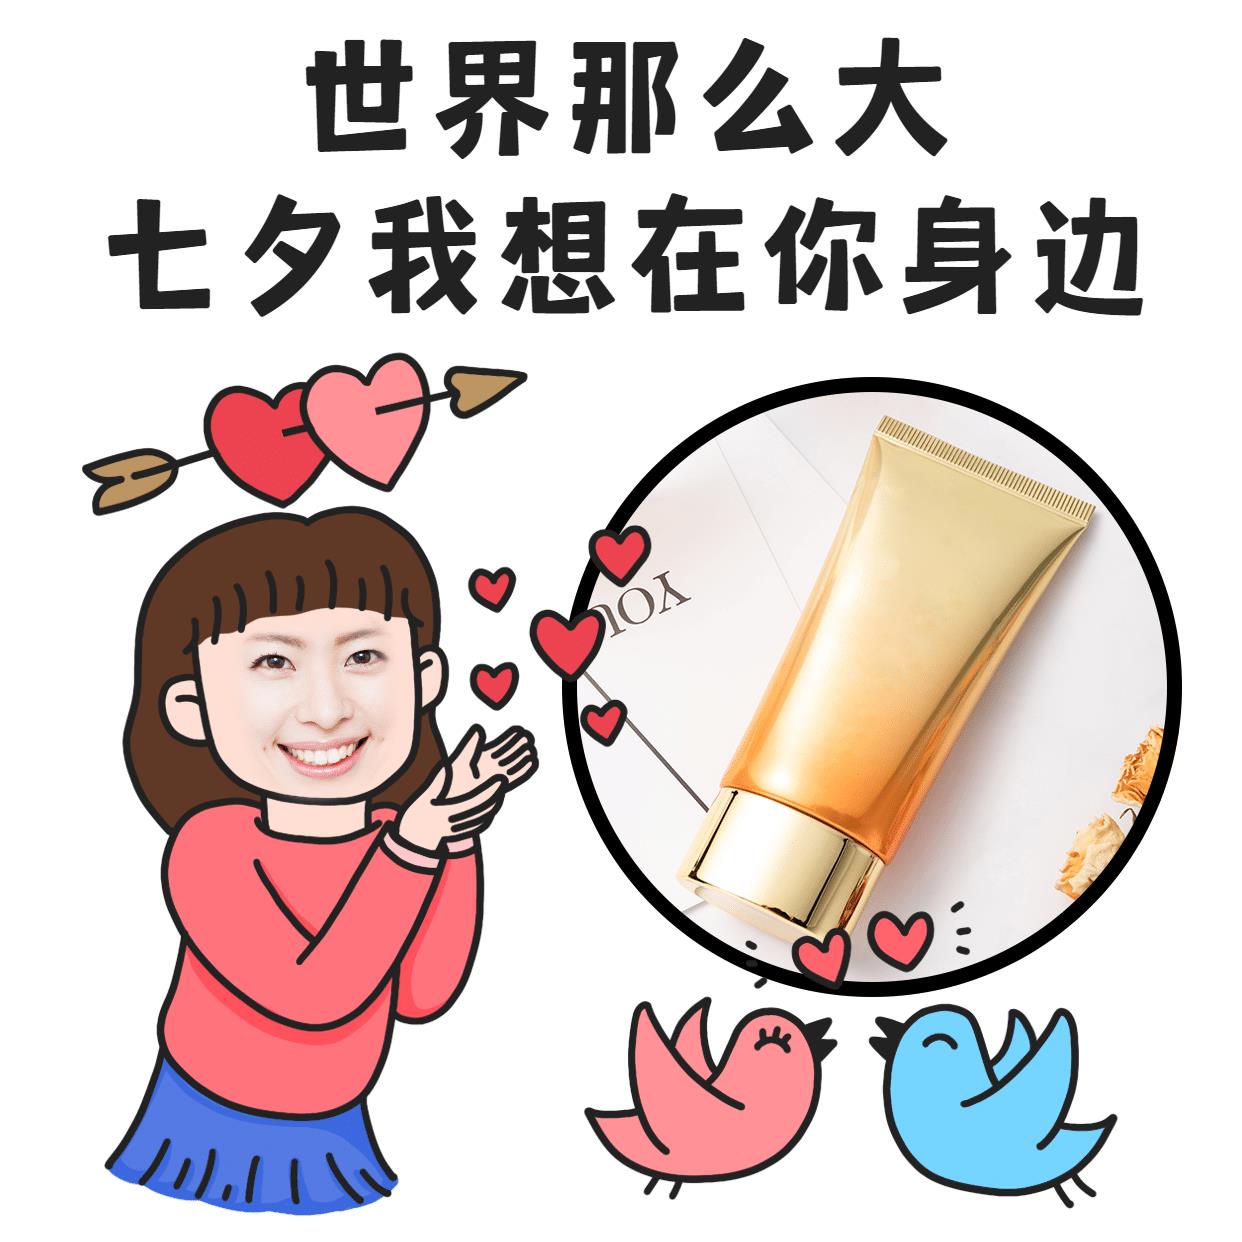 七夕创意手绘营销表情包趣味晒产品图片